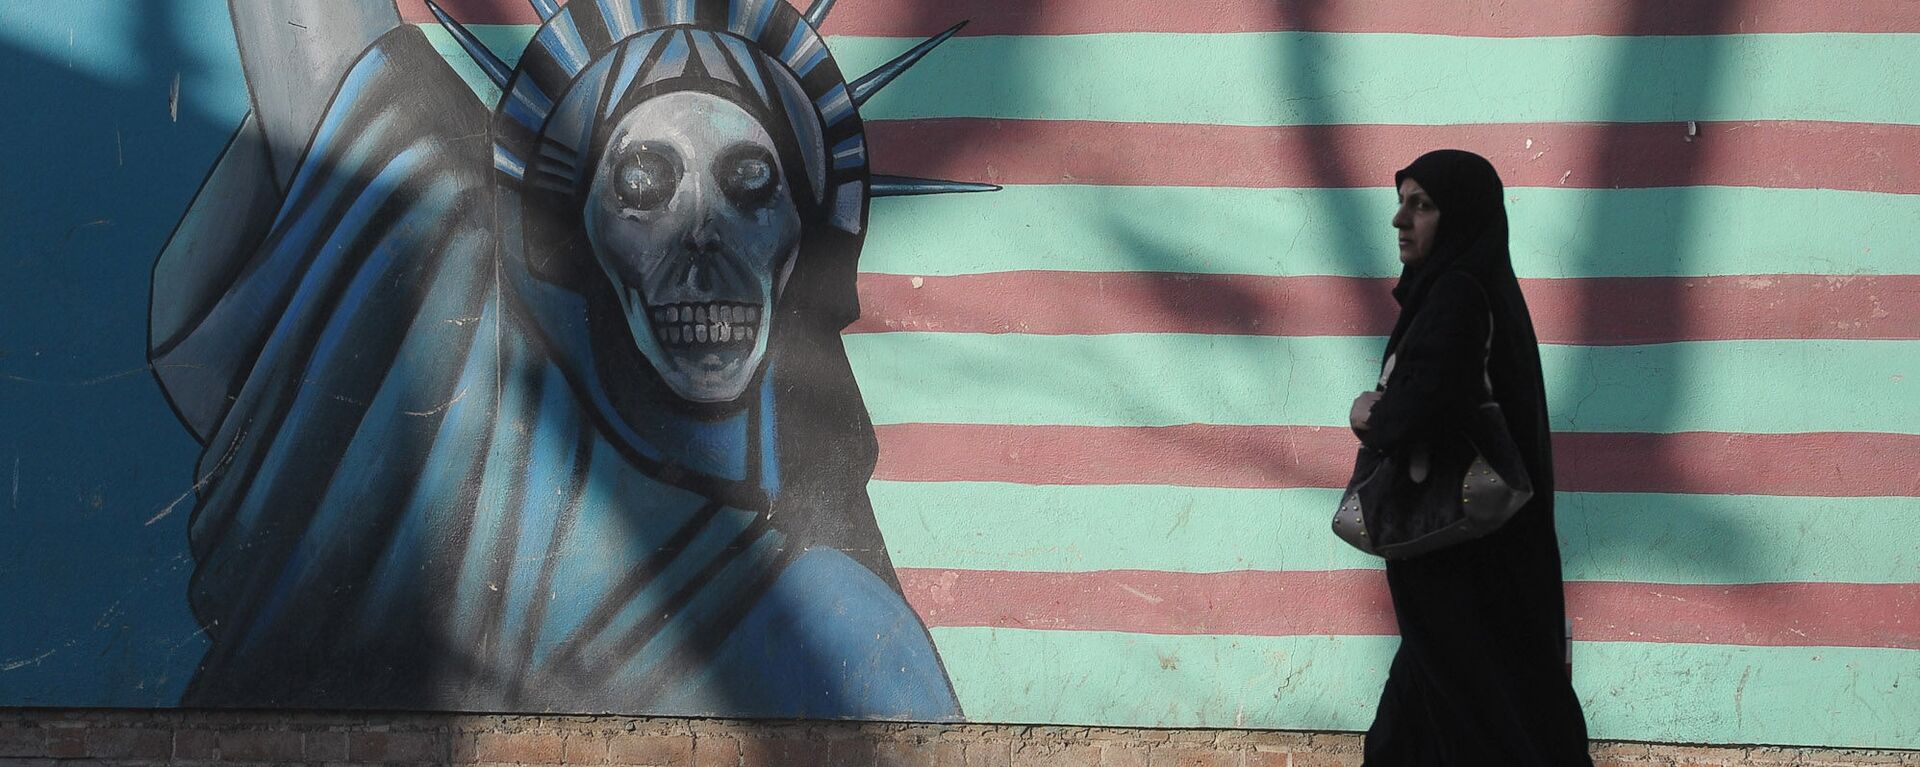 Граффити на стене бывшего посольства США в Тегеране. - Sputnik Армения, 1920, 01.04.2021